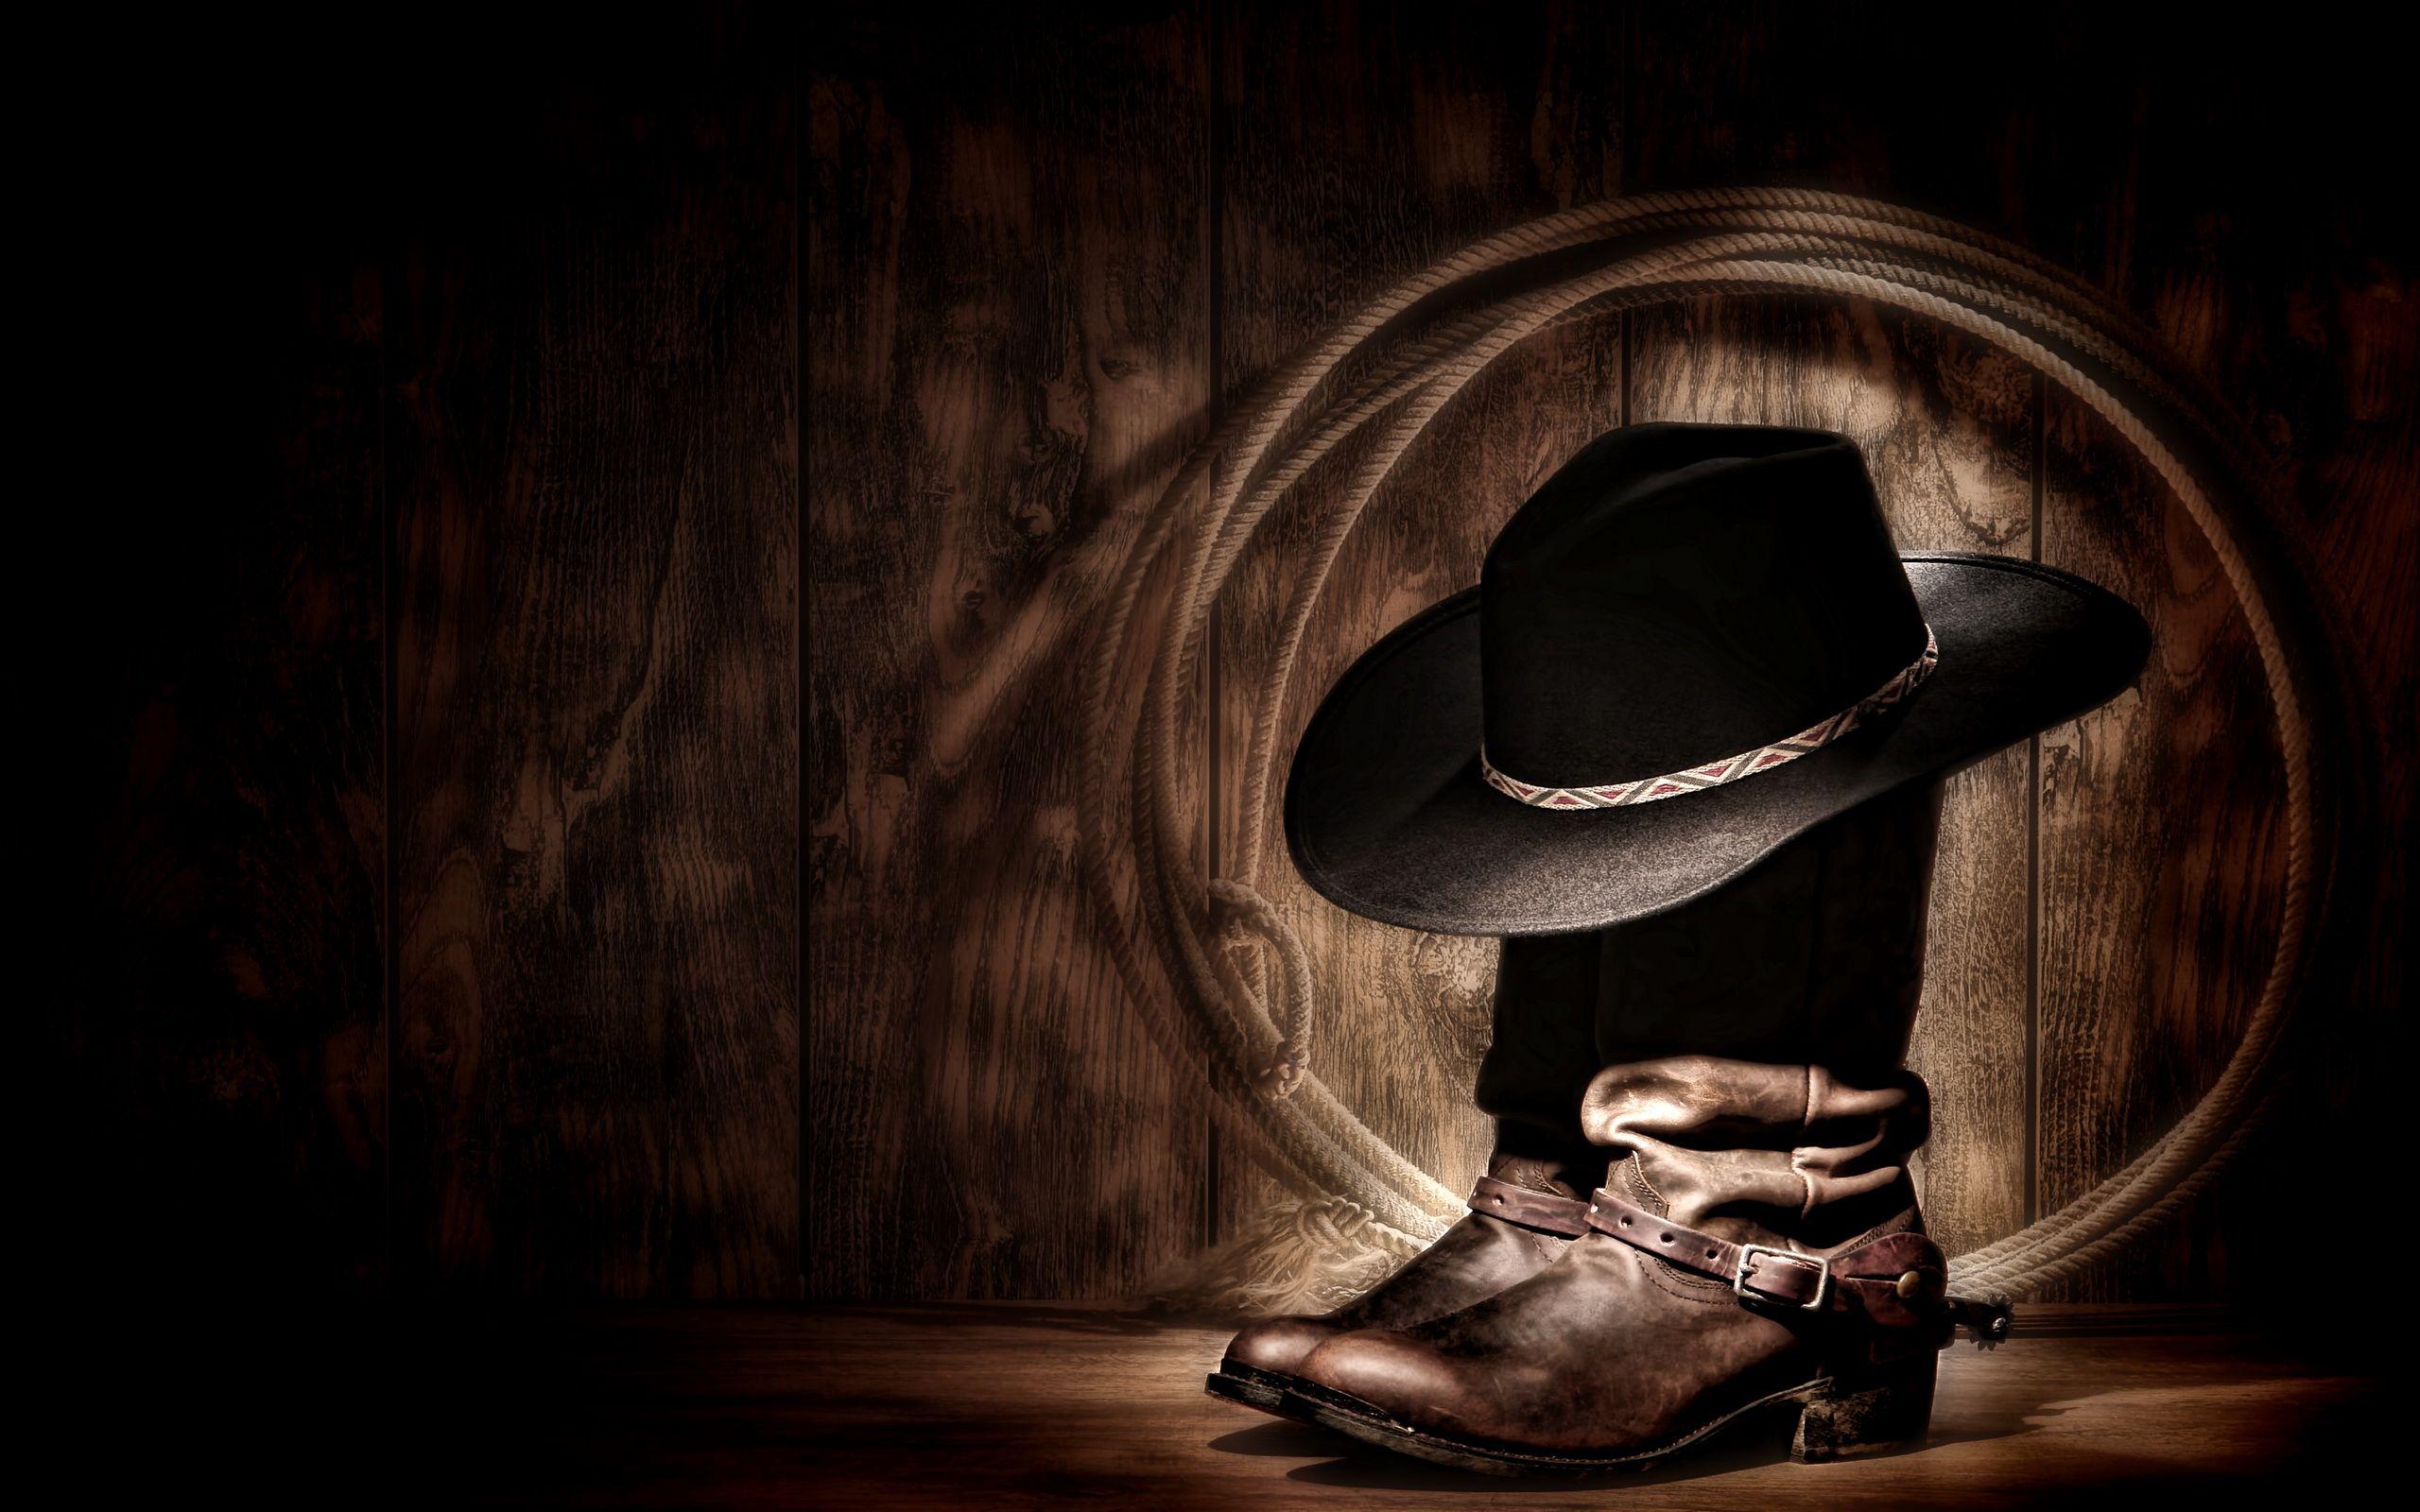 Cowboy Wallpaper, Top Beautiful Cowboy Pics, 76 HDQ Cover, Desktop